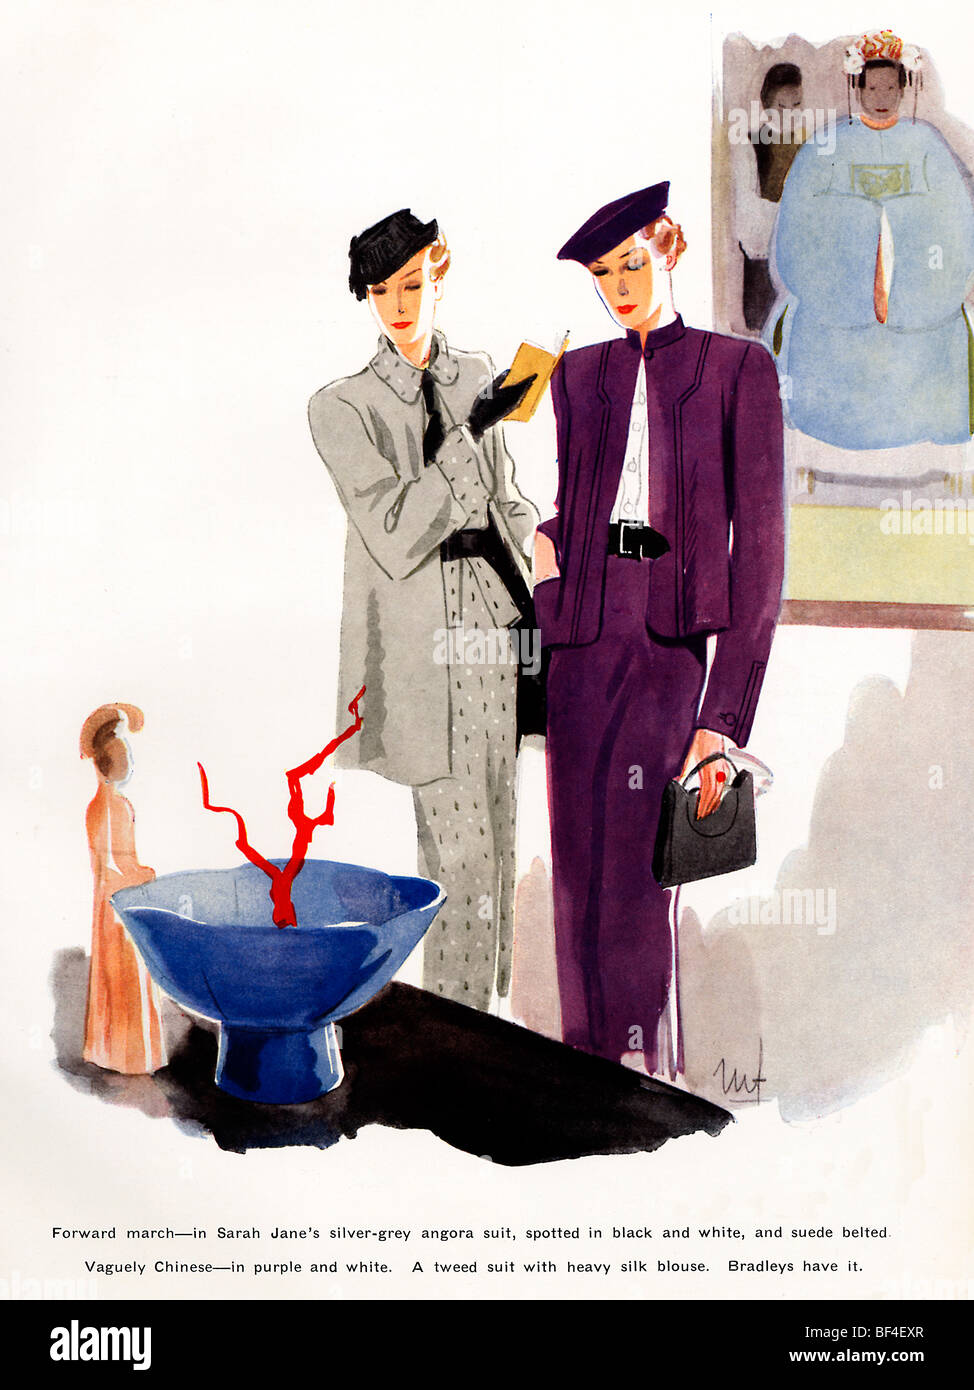 L'avant mars 1930, magazine de mode illustration de robes de jour par Sarah Jane avec un thème Chinois vaguement Banque D'Images